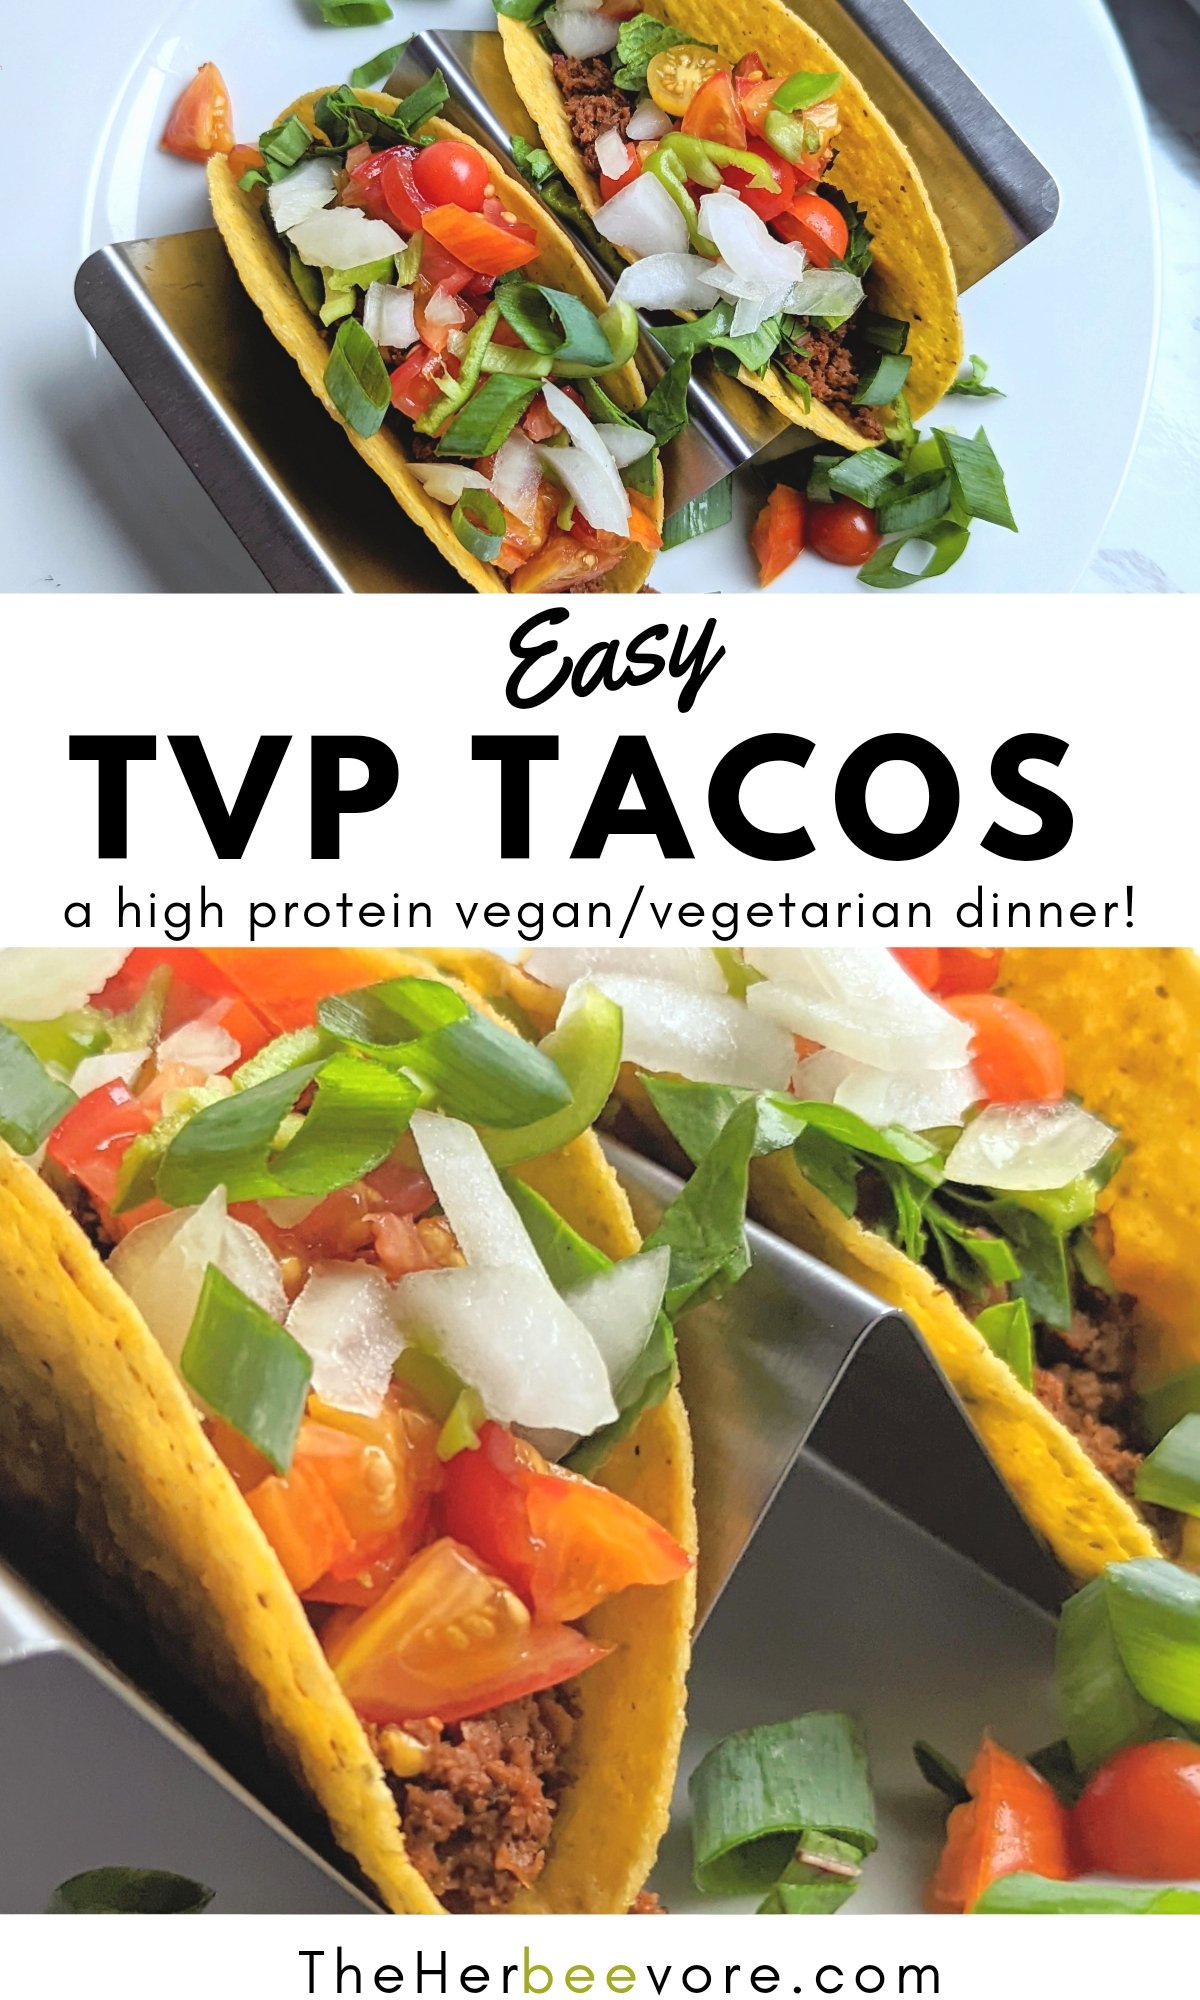 tvp tacos vegan taco tuesday recipes healthy plant based tacos with tvp taco night recipe hihg protein vegan tacos